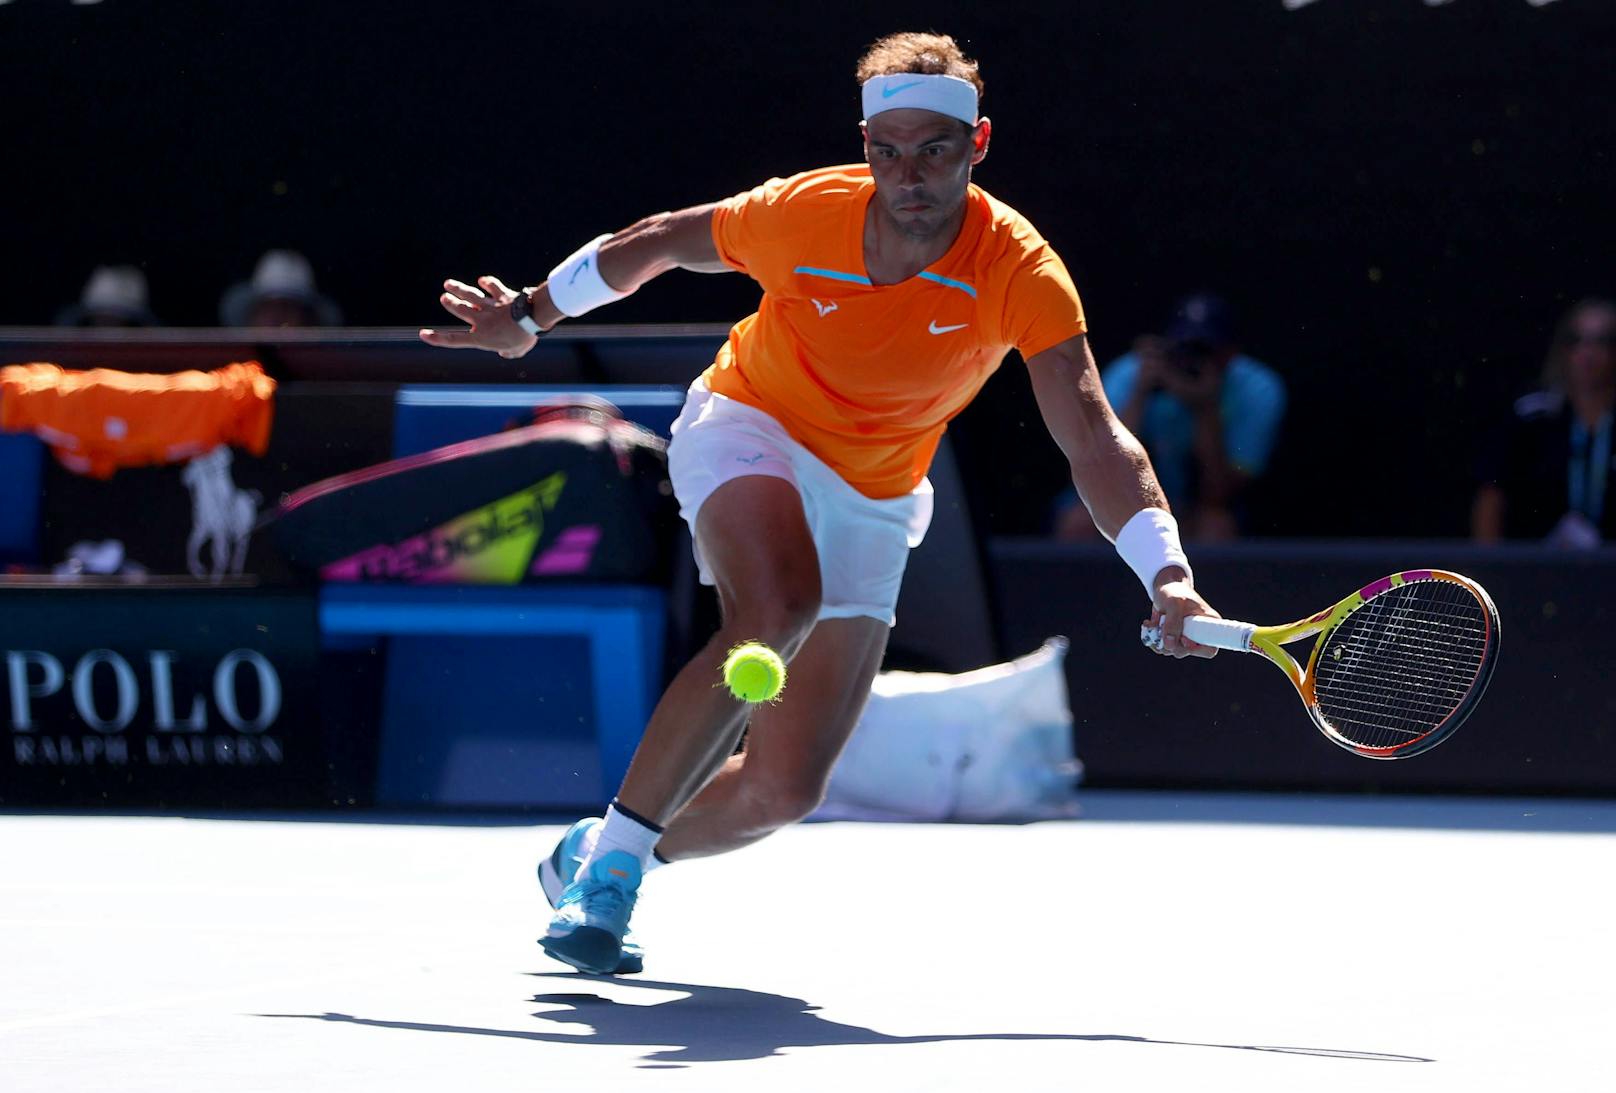 Kuriose Szene: Ballbub klaut Schläger von Rafael Nadal